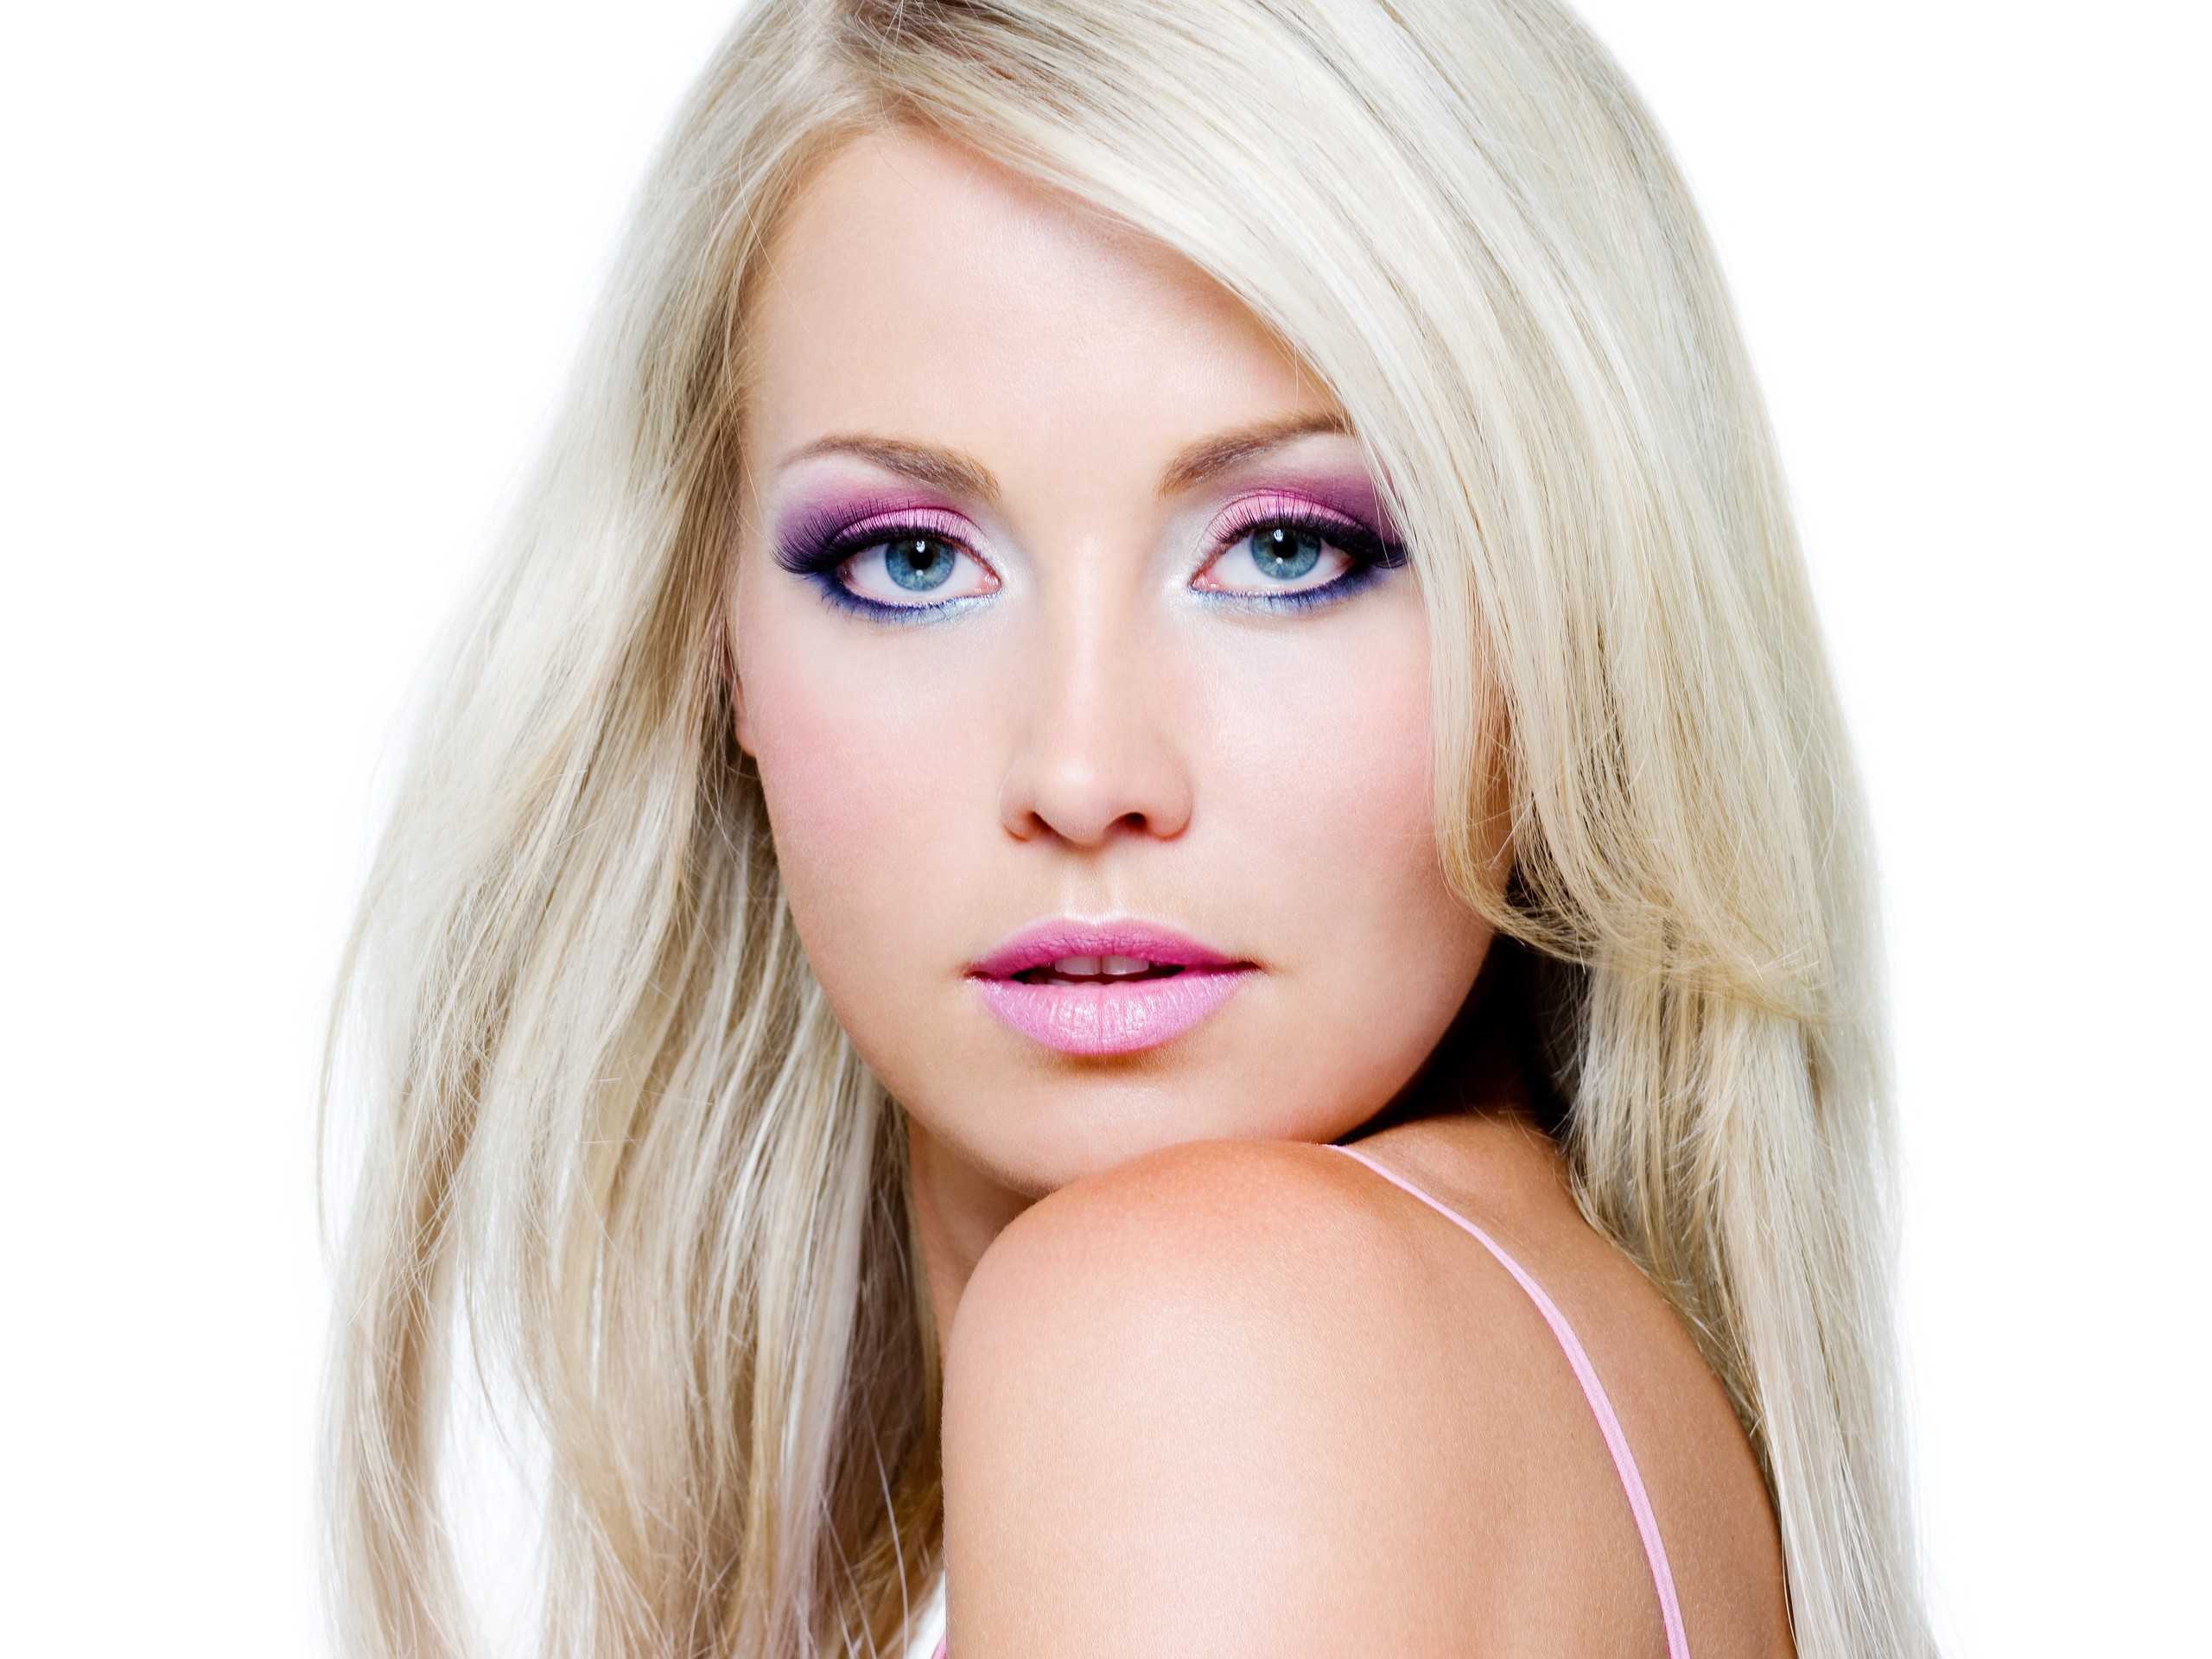 Красивый макияж для блондинок, вечерний и дневной варианты » womanmirror
красивый макияж для блондинок, вечерний и дневной варианты